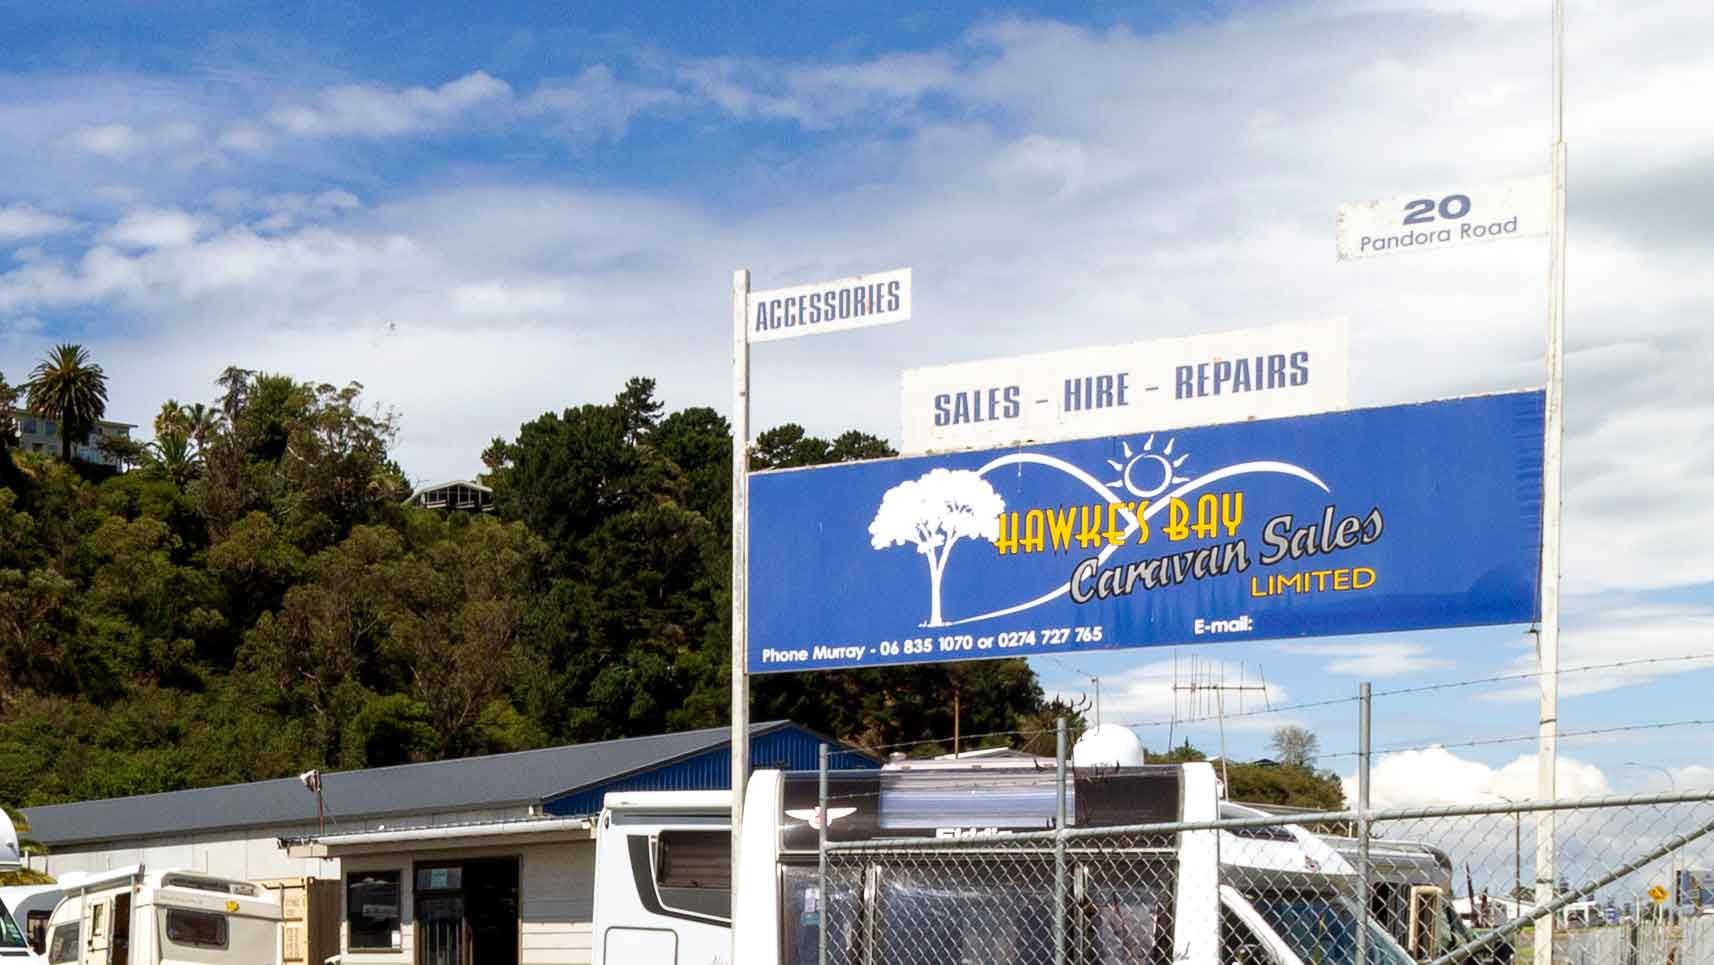 Hawkes Bay Caravan Sales Limited